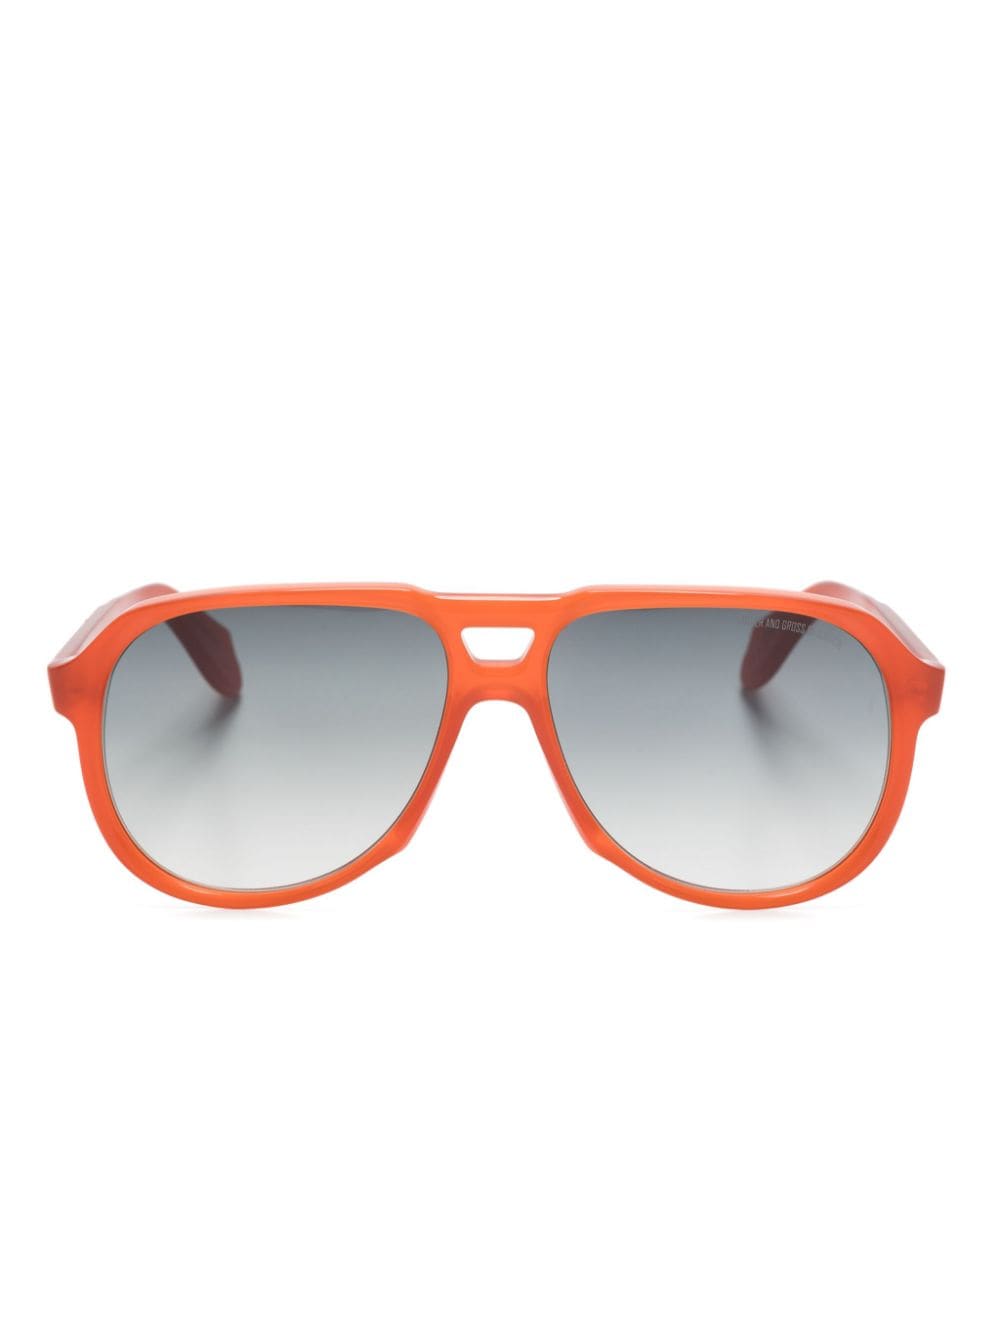 Cutler & Gross 9782 navigator-frame sunglasses - Orange von Cutler & Gross